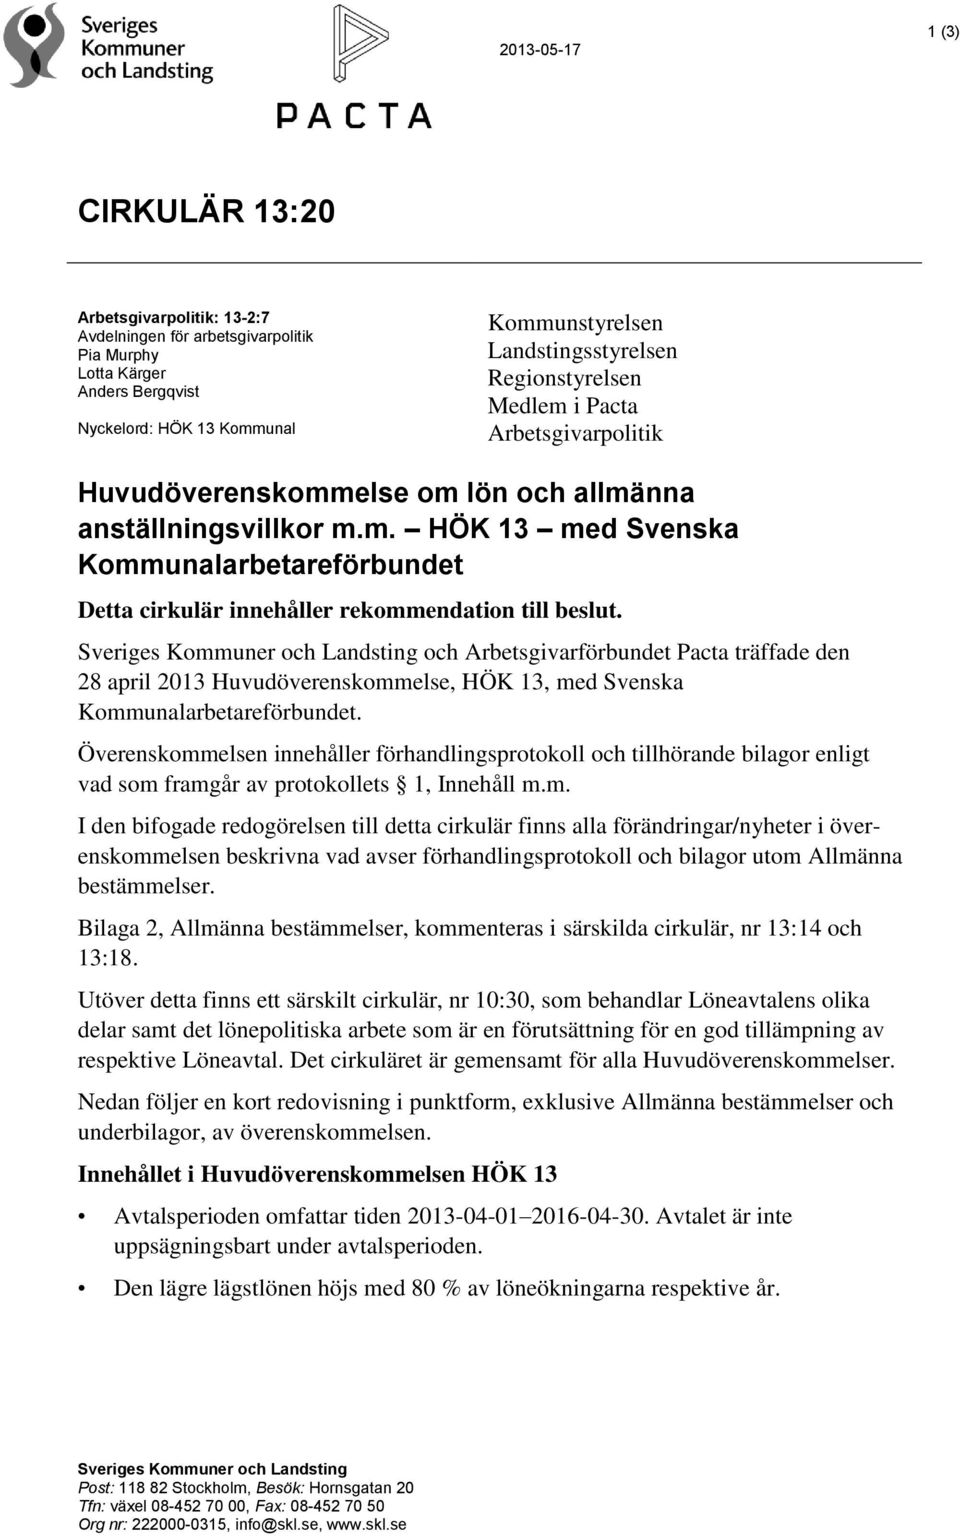 Sveriges Kommuner och Landsting och Arbetsgivarförbundet Pacta träffade den 28 april 2013 Huvudöverenskommelse, HÖK 13, med Svenska Kommunalarbetareförbundet.